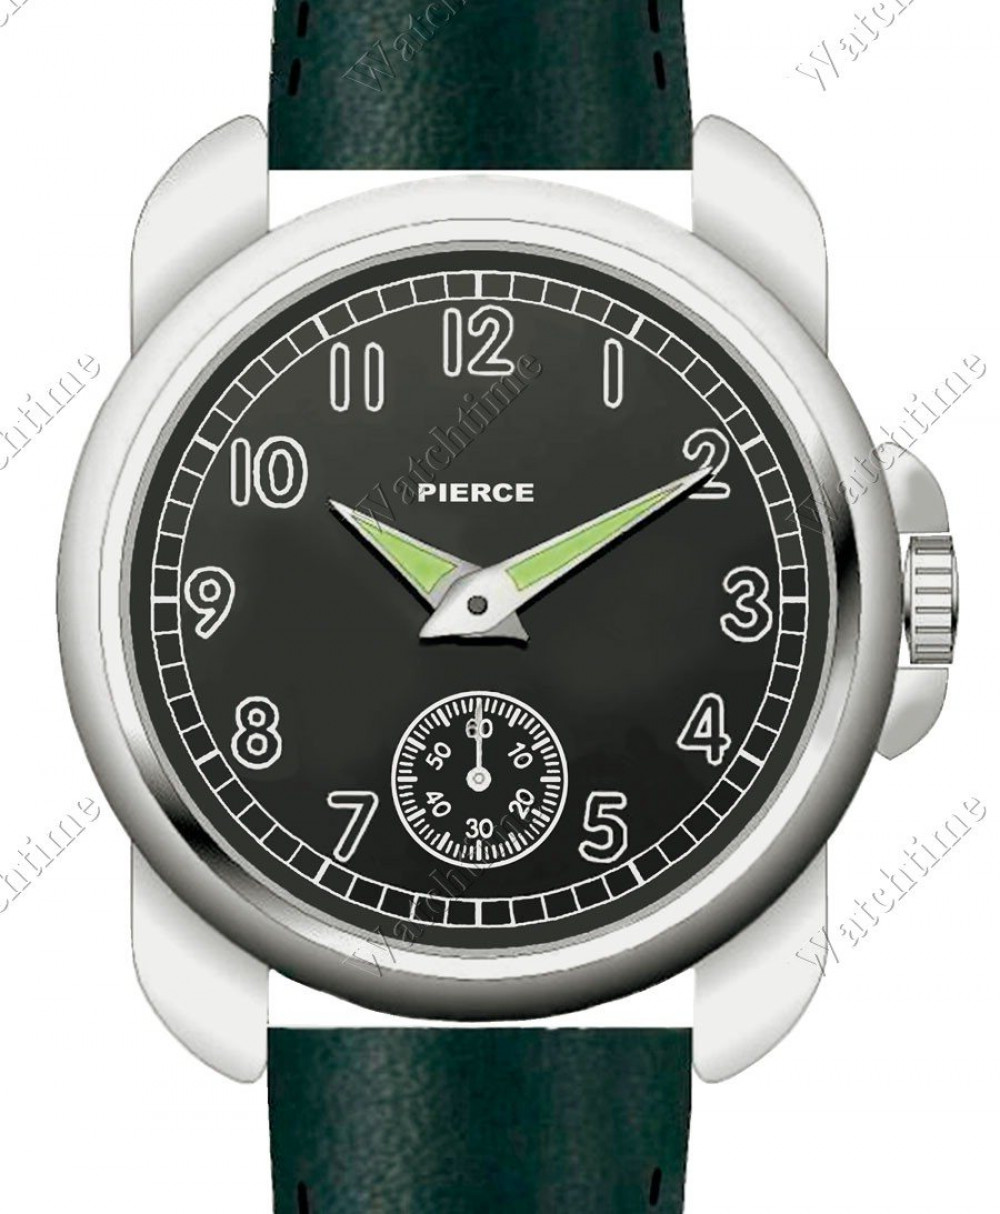 Zegarek firmy Pierce 1883, model Ocean Drive Re-Edition